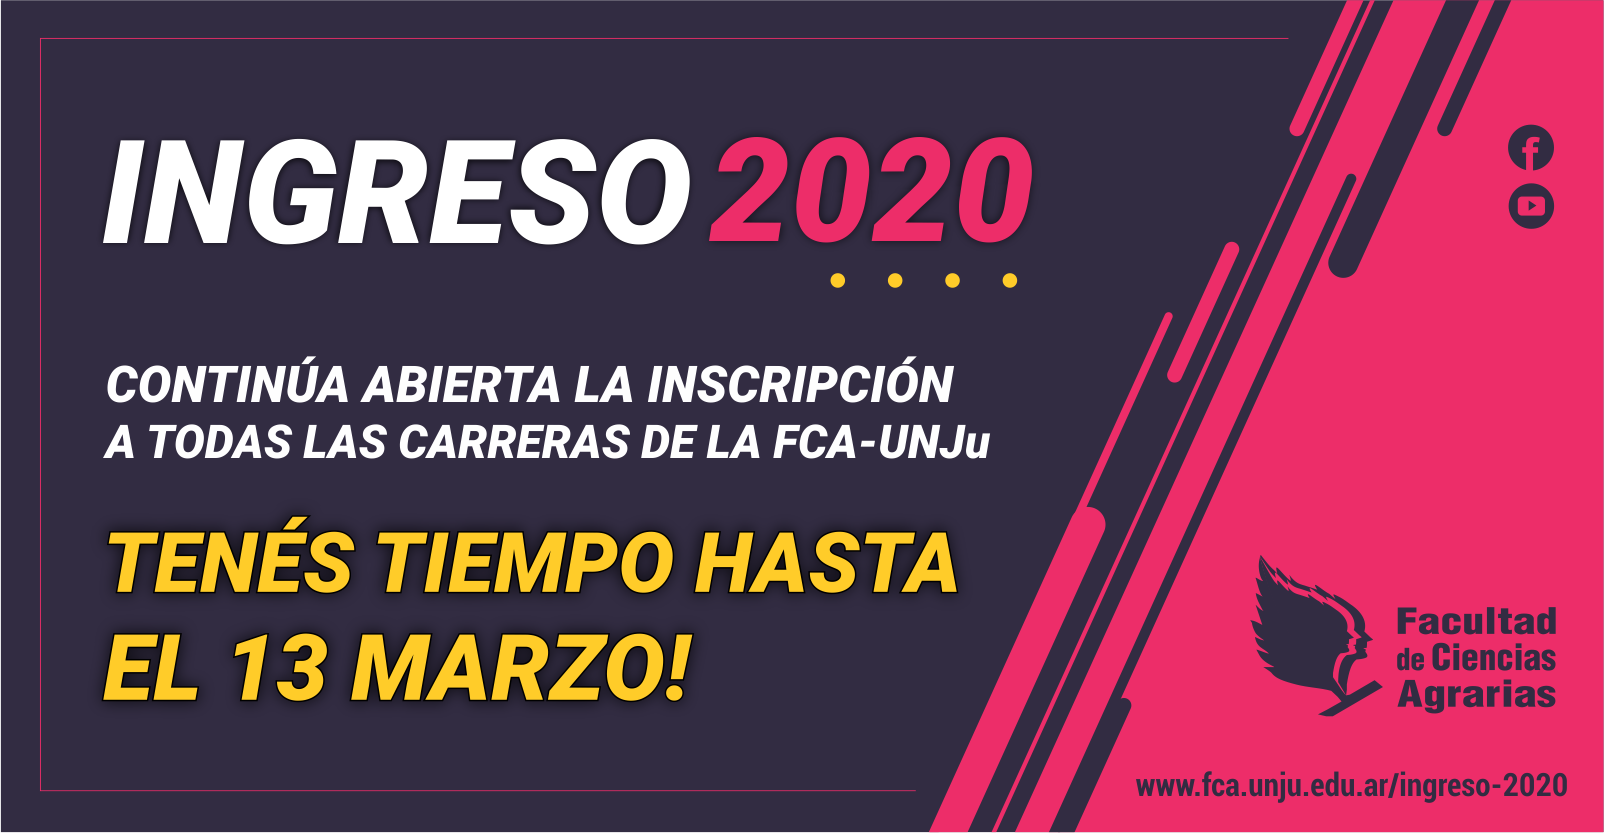 EXTENSIÓN DEL PERIODO DE INSCRIPCIÓN PARA EL INGRESO 2020